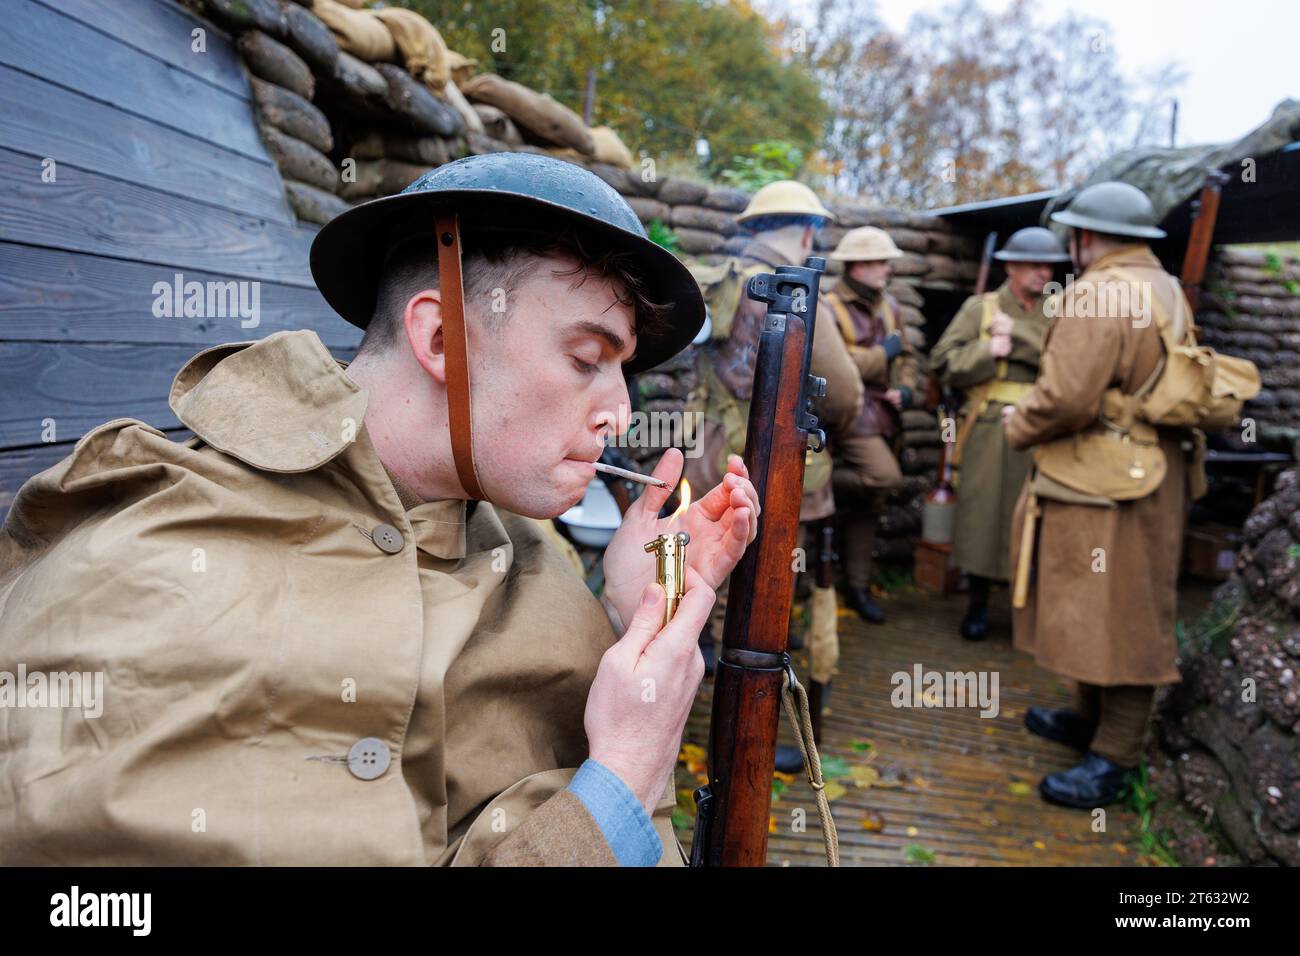 Das Staffordshire Regiment Museum hat Schützengräben gebaut, die den echten aus dem Weltkrieg nachempfunden wurden, um Besuchern ein Erlebnis zu geben, wie das Leben der Soldaten in den Schützengräben war. Das Museum veranstaltet Veranstaltungen mit Reenactoren, um die Stimmung zu schaffen und die Geschichte dieser Zeit zum Leben zu erwecken. Auf dem Bild zündet Isaac Marlow (27) von der Birmingham Pals-Truppe in einem der Gräben eine Zigarette an, die mit einem französischen Feuerzeug aus dieser Zeit aufgerollt wurde. Stockfoto